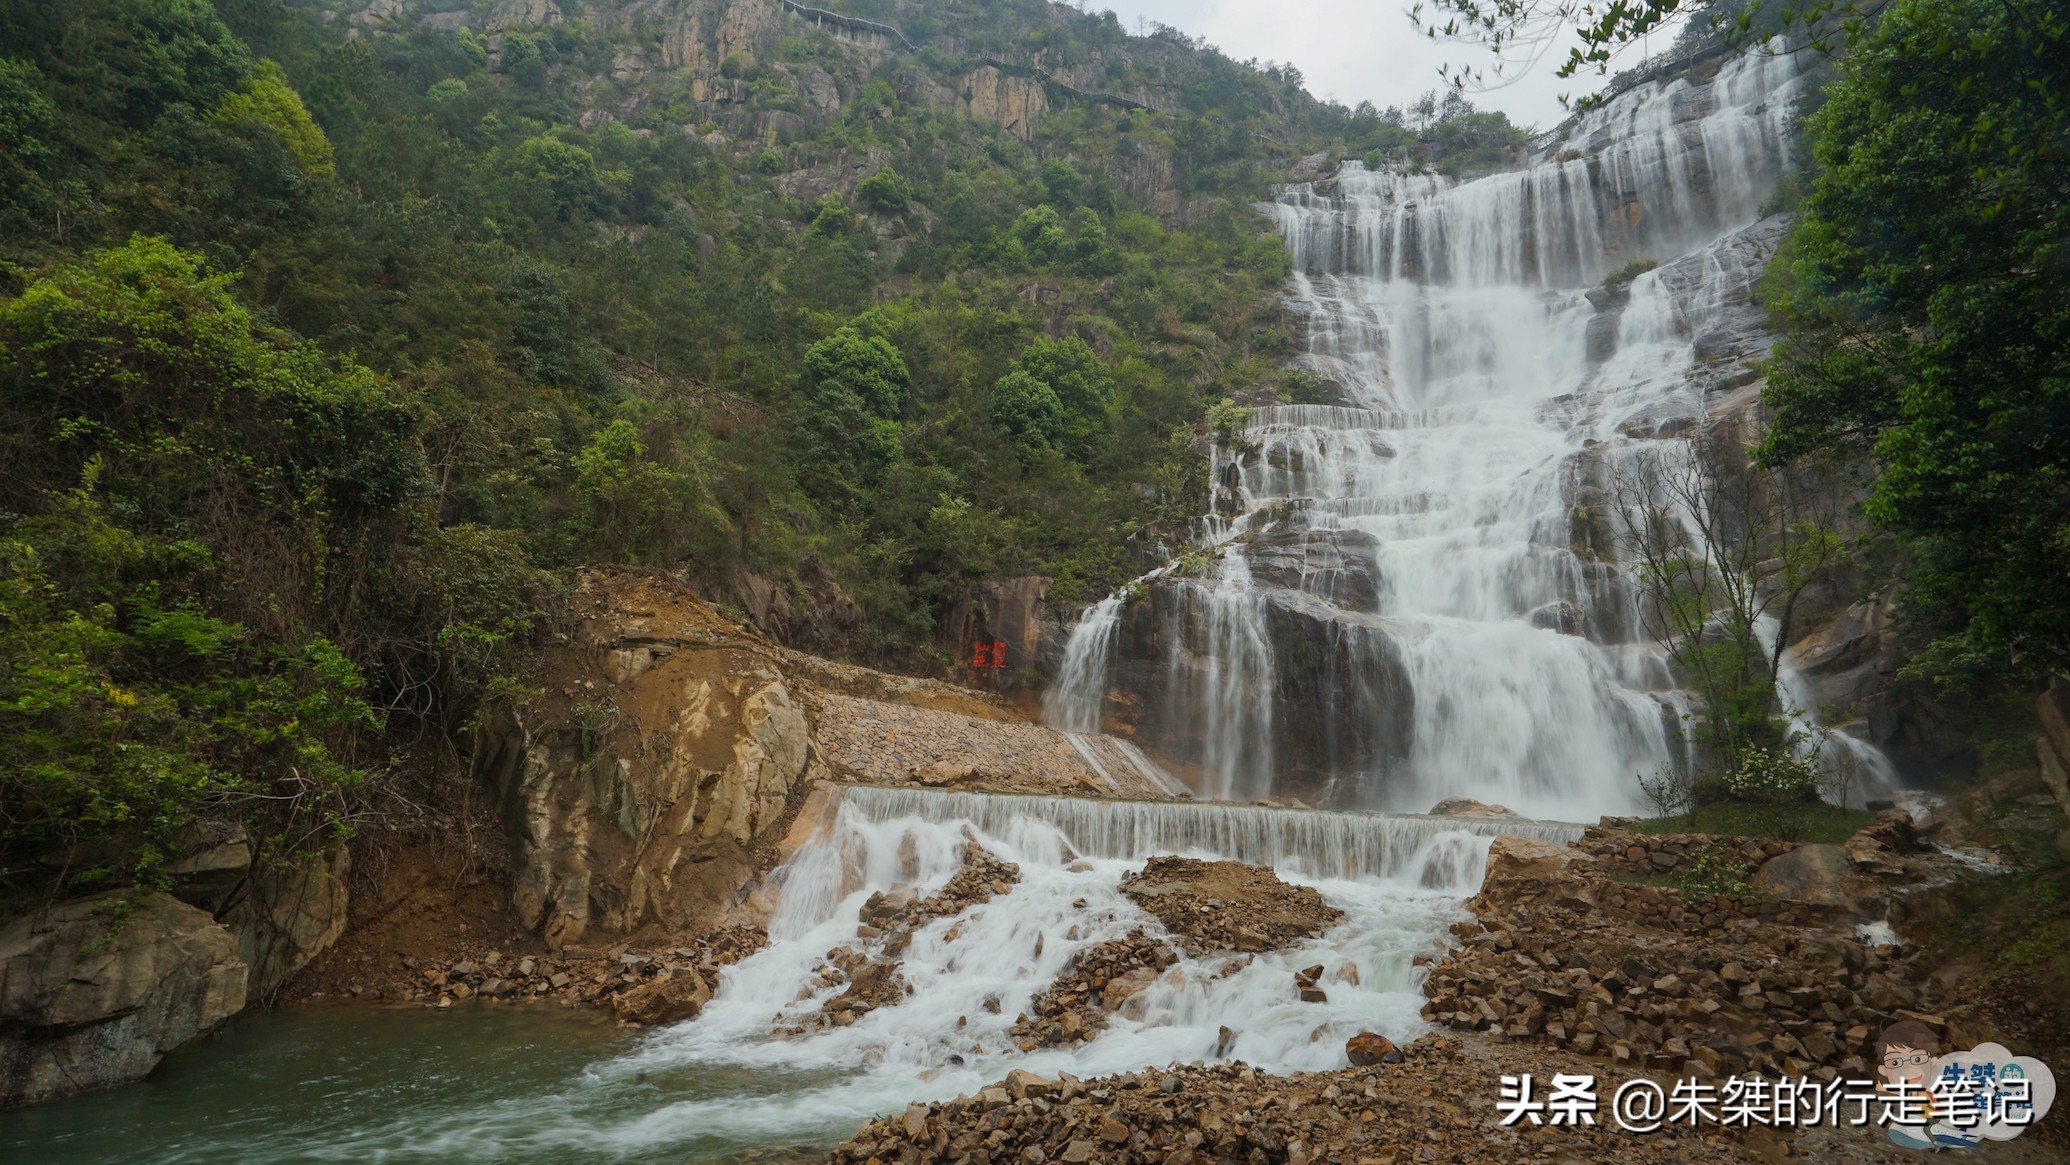 从断流到复流，积淀千年文化的“中华第一高瀑”用了六十多年时间